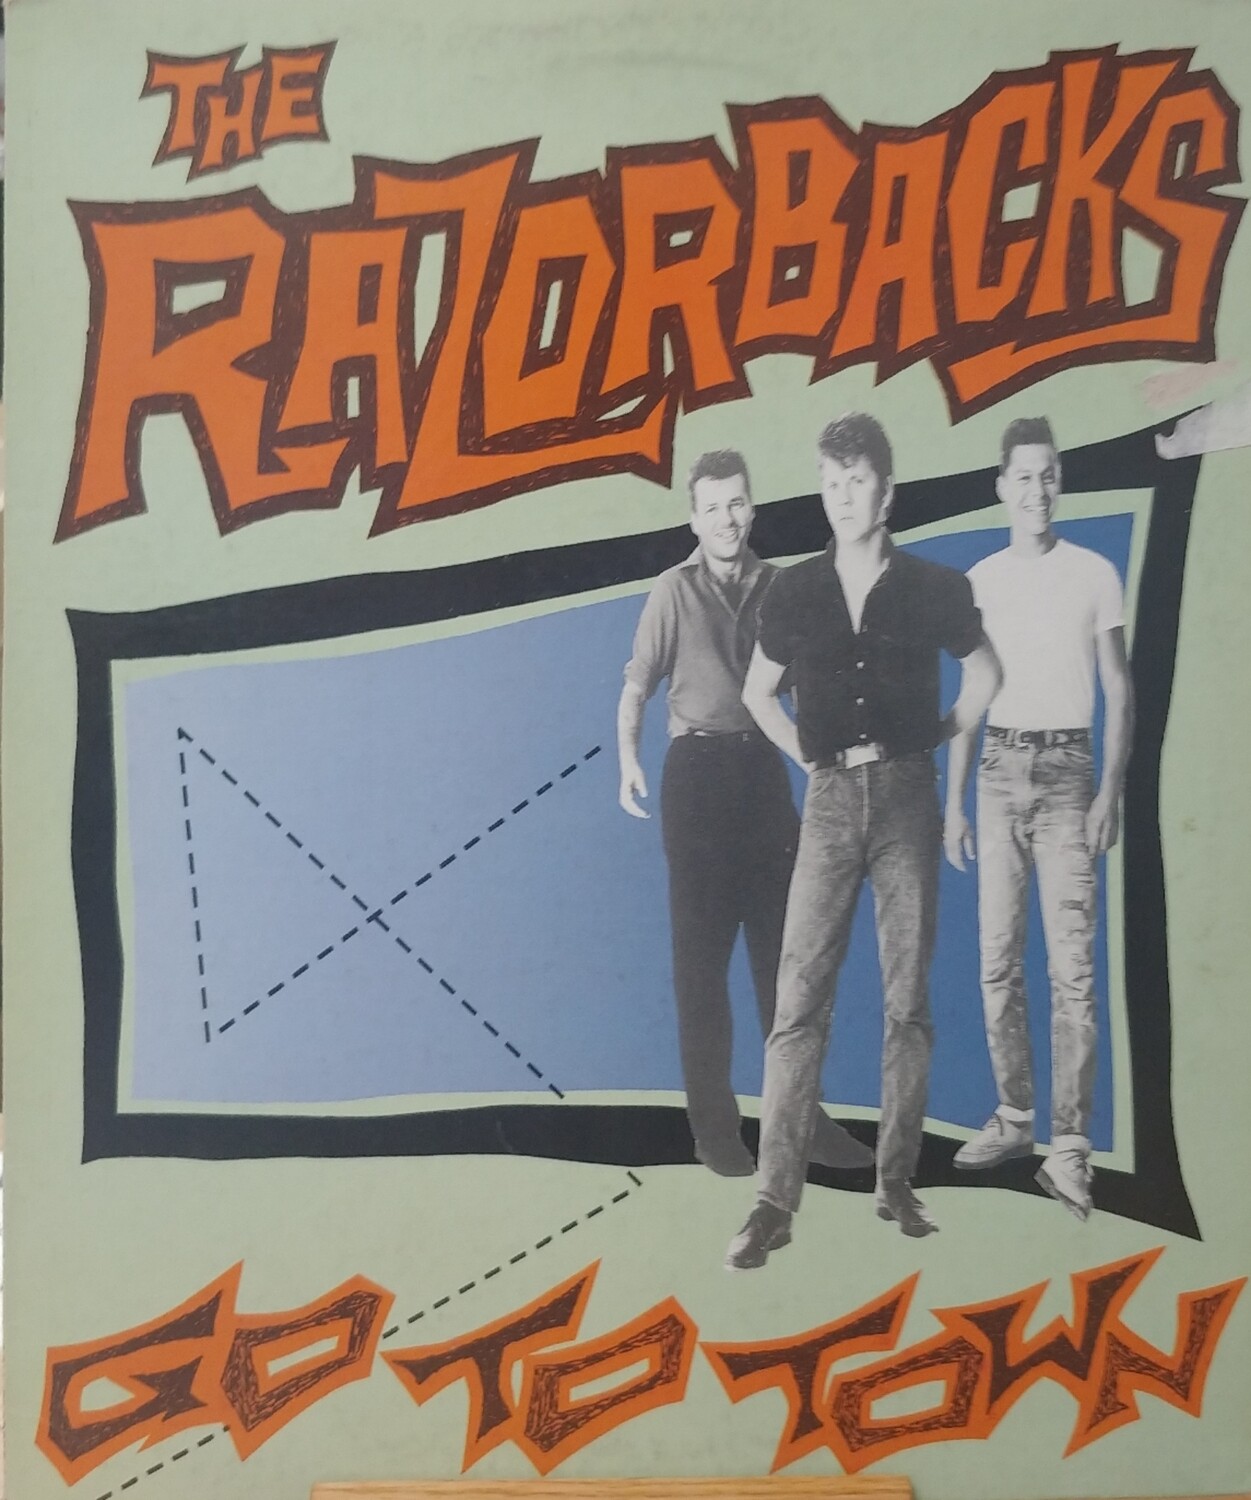 The Razorbacks - Go to town